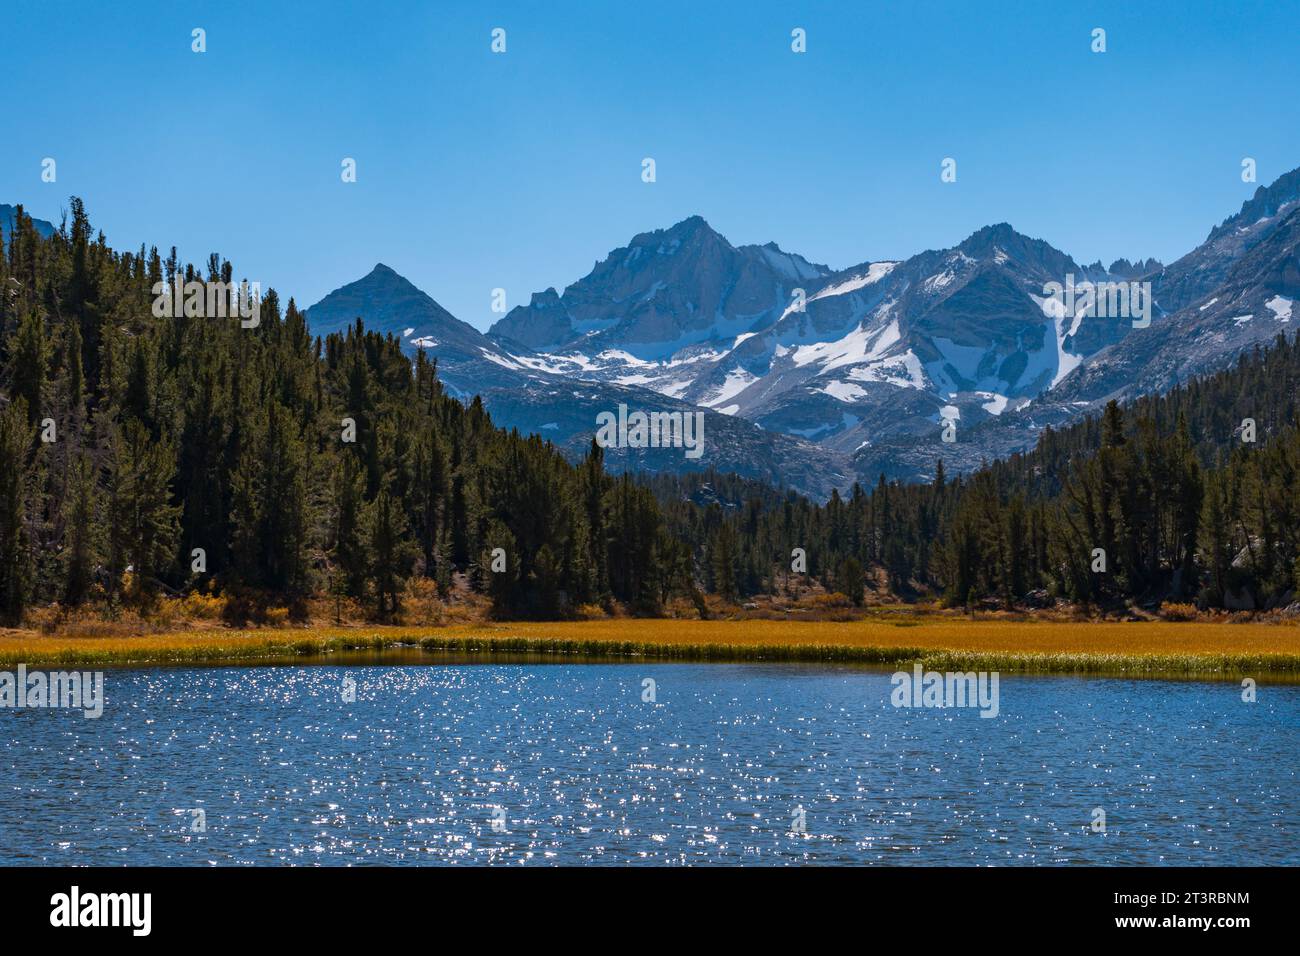 Randonnée dans la vallée de Little Lakes dans les montagnes de l'est de la Sierra Nevada à l'extérieur de Bishop, Californie. Lacs alpins, couleurs de feuilles d'automne, monta enneigée Banque D'Images